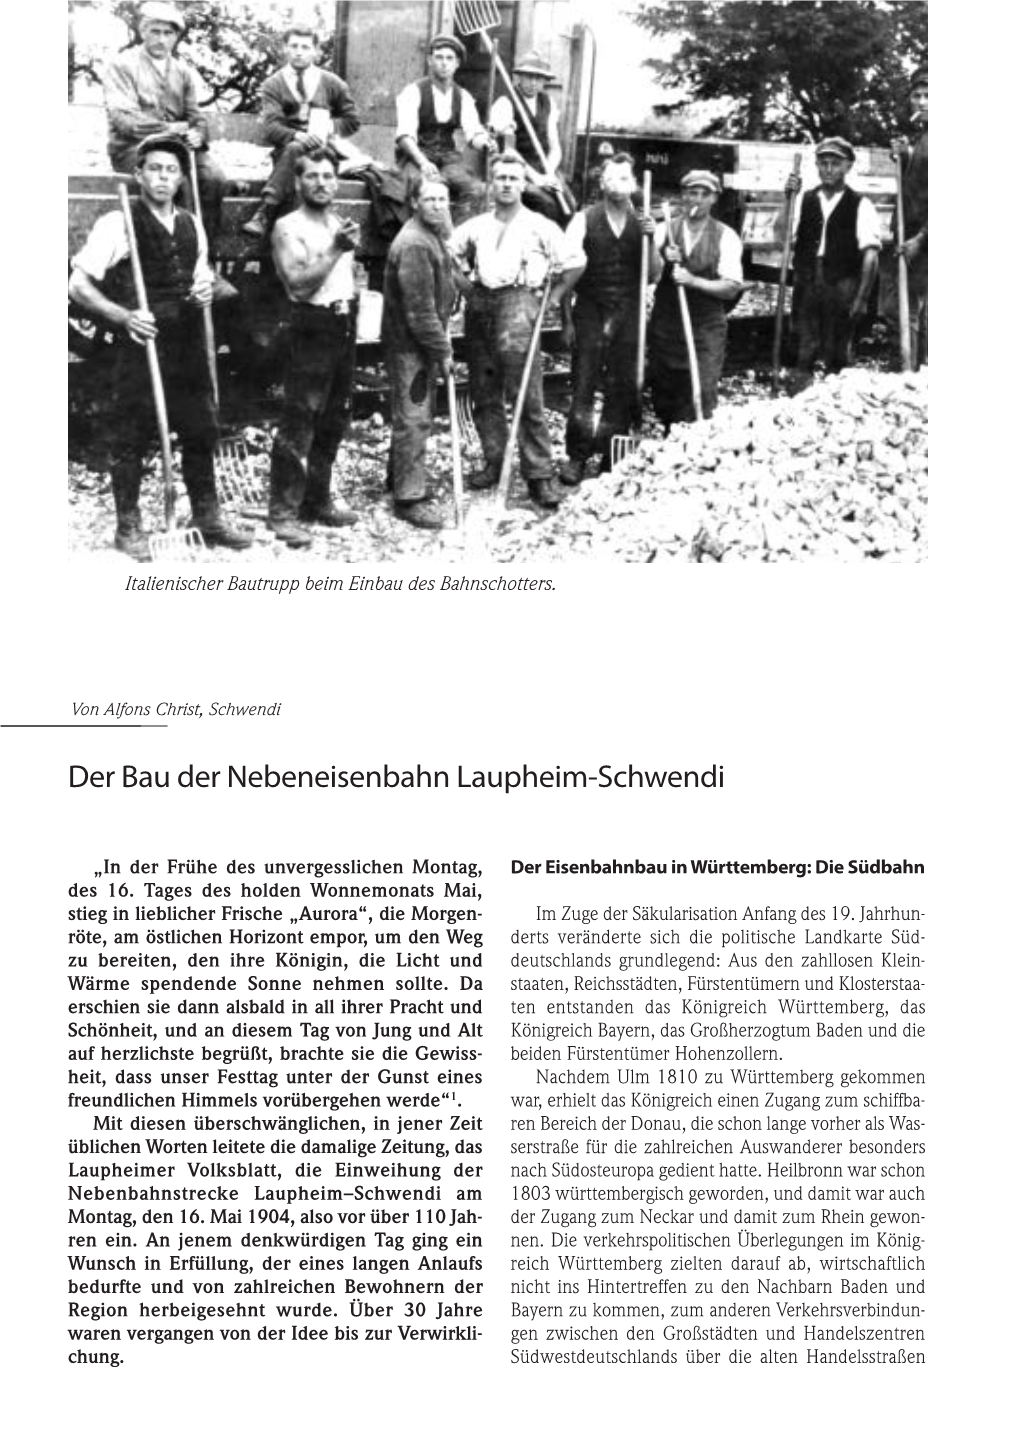 Der Bau Der Nebeneisenbahn Laupheim-Schwendi